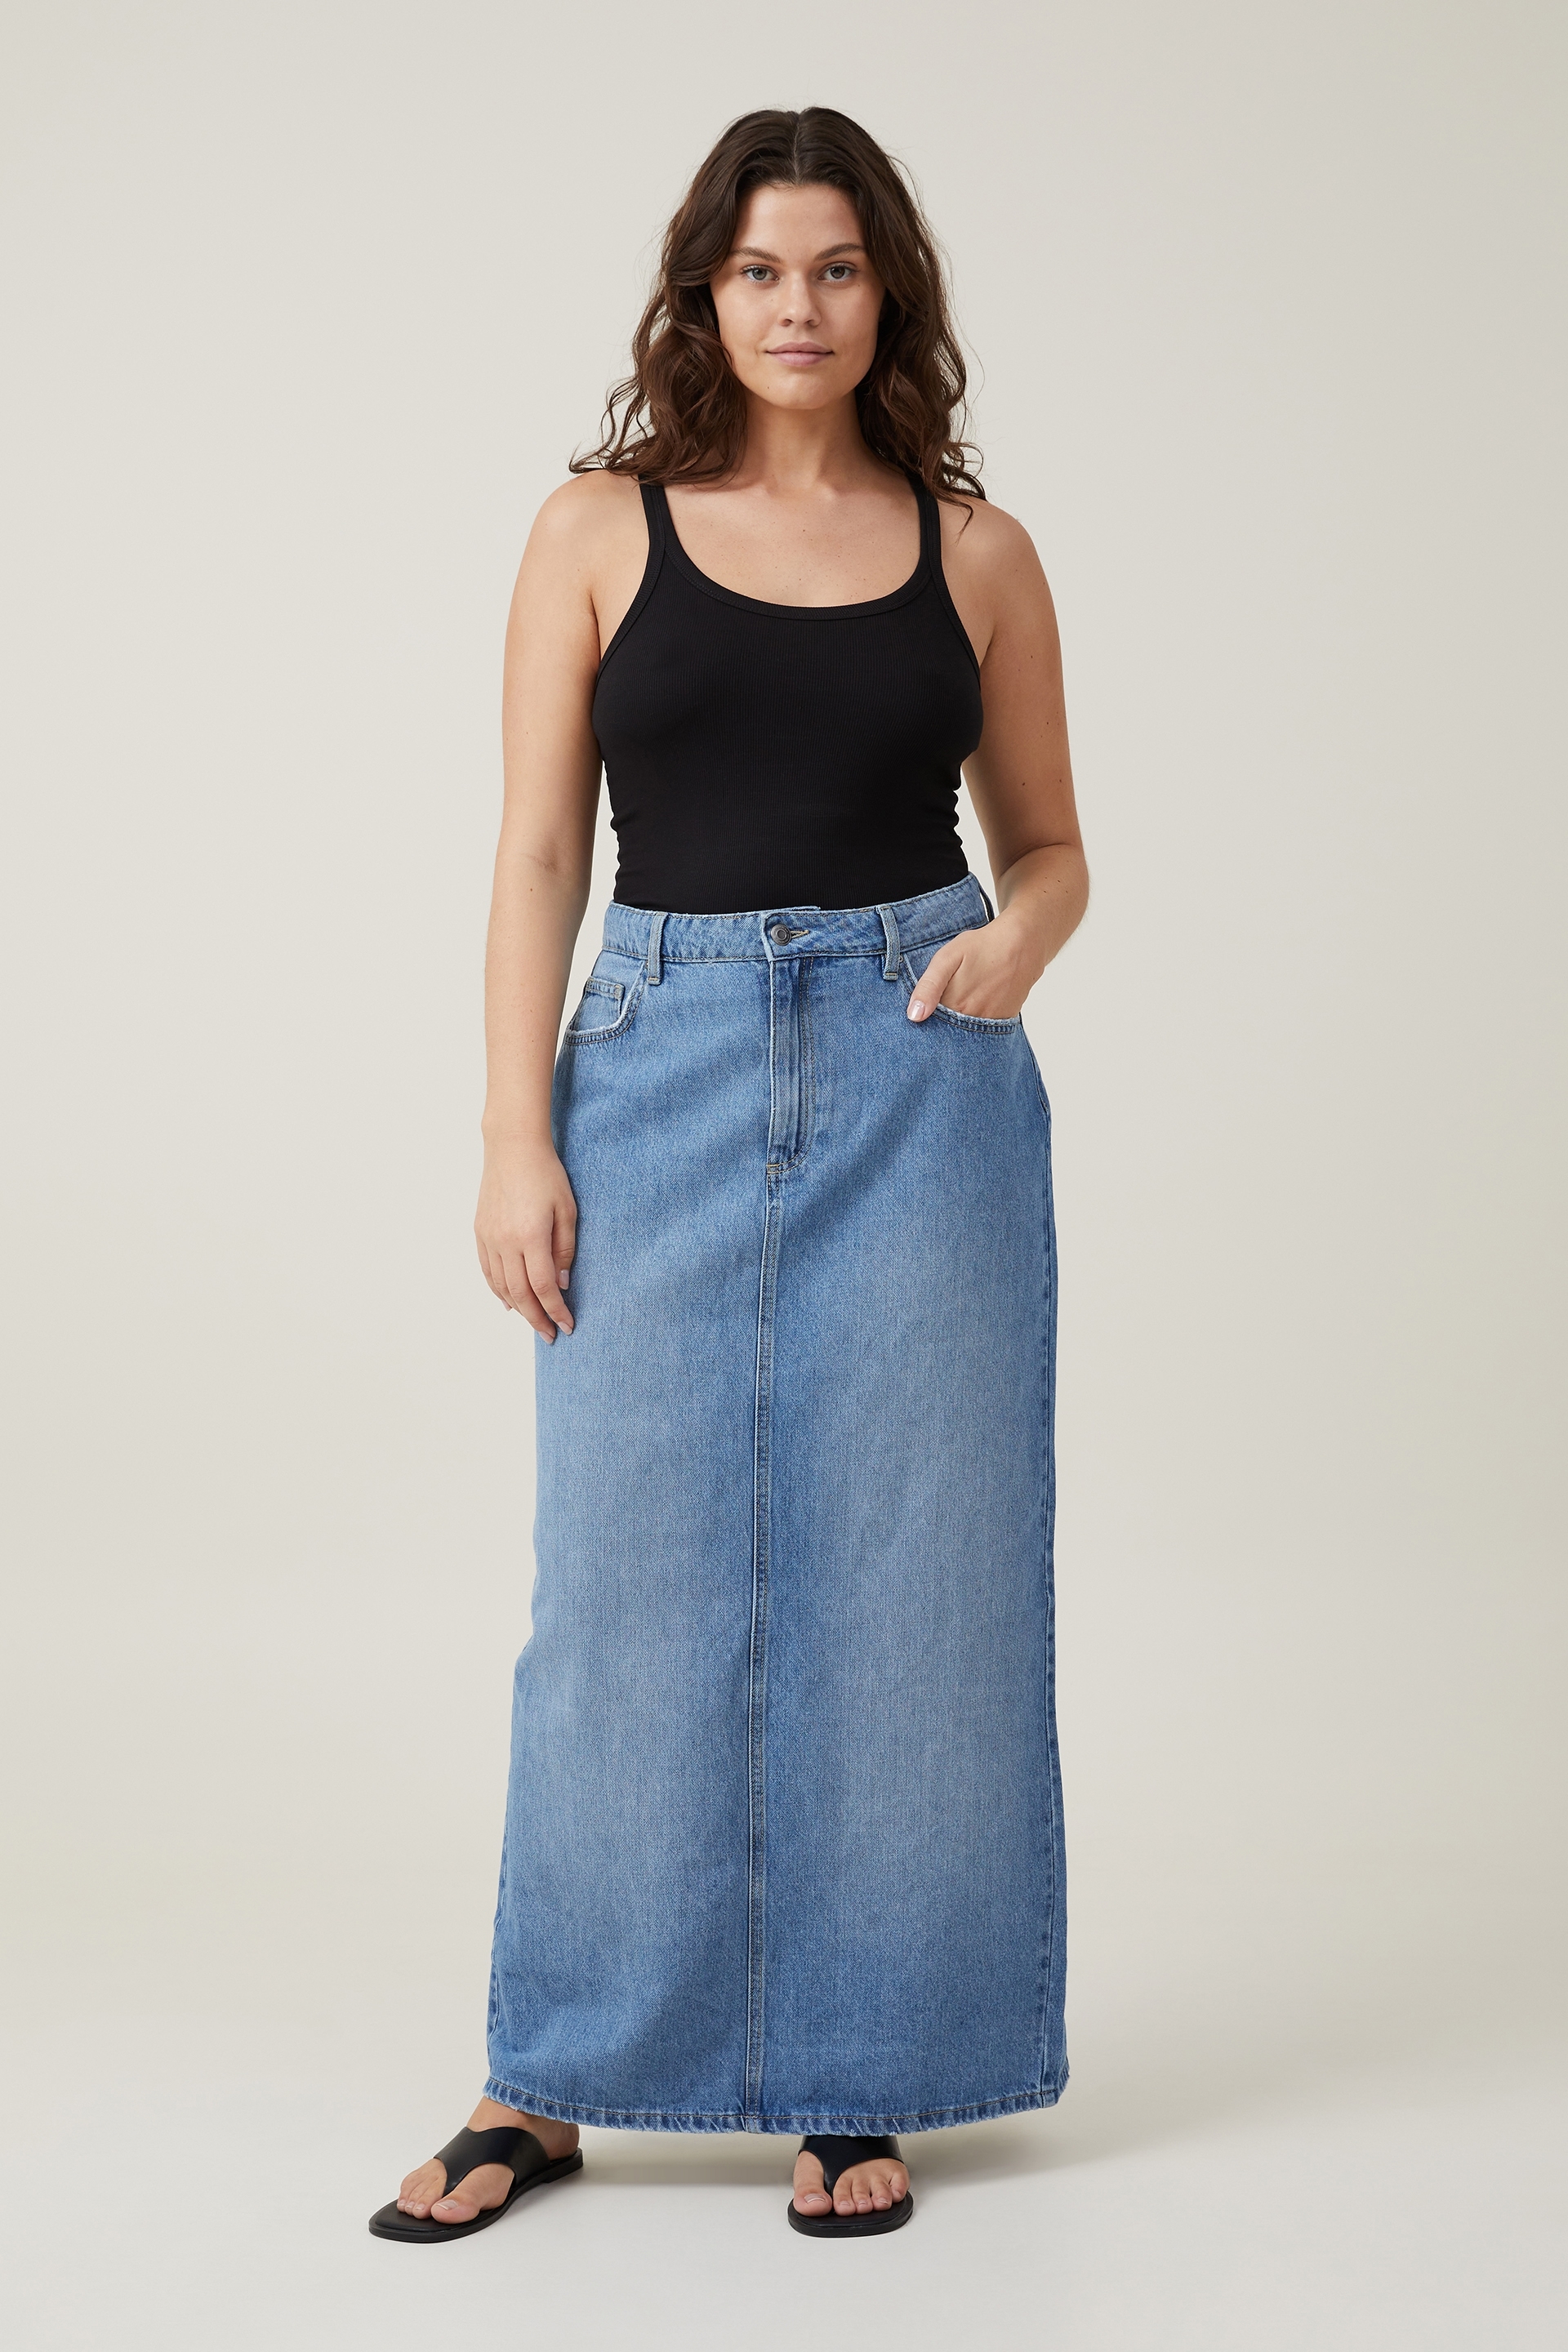 Black Denim Skirt | Buy Denim Skirts Online Australia- THE ICONIC